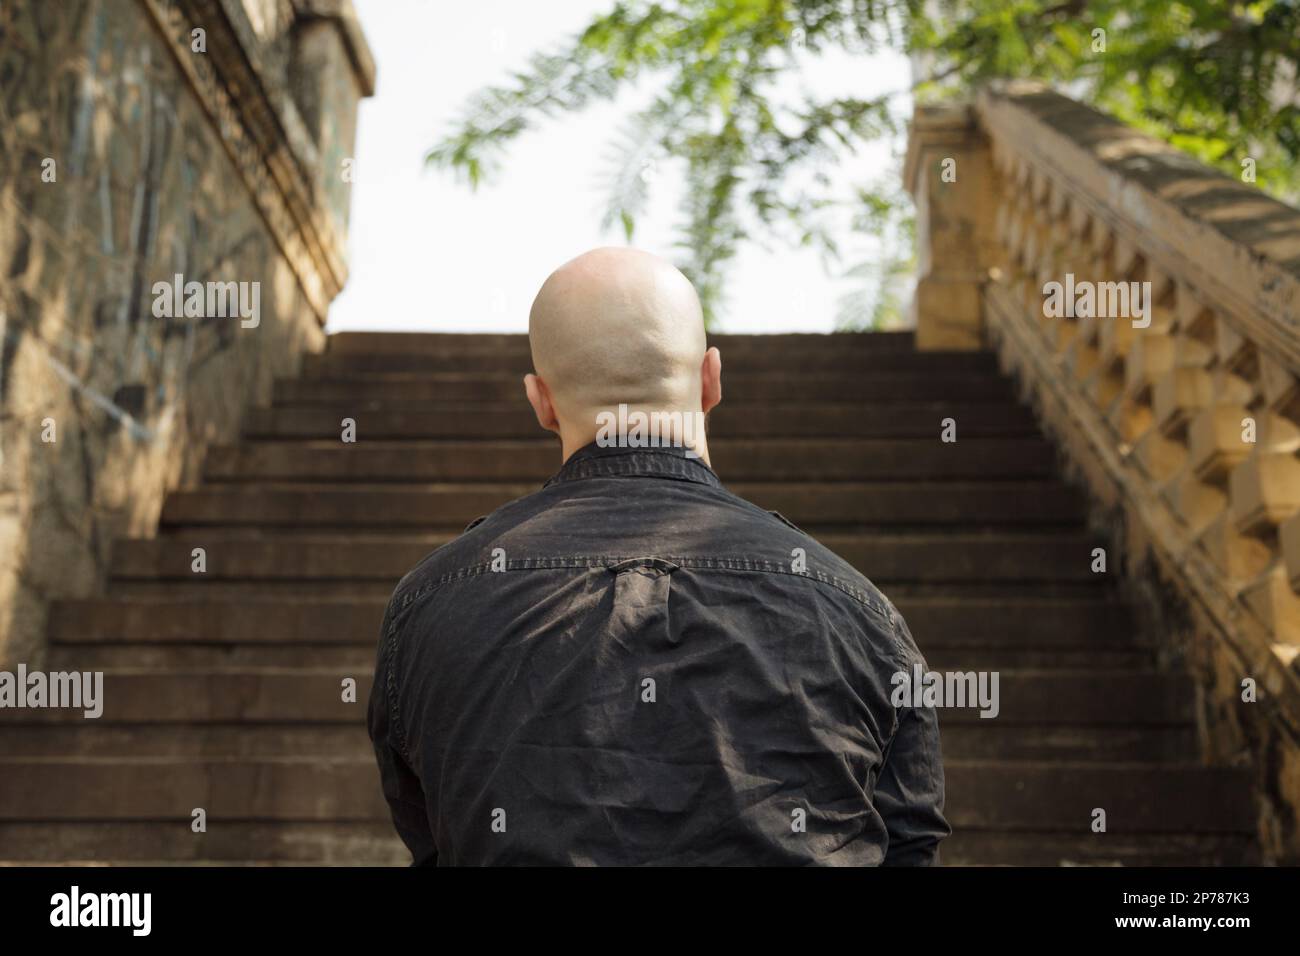 Rückansicht eines kahlköpfigen kaukasischen Mannes, der vor der Treppe steht. Nicht identifiziertes Inkognito-Personenkonzept. Unkenntlich übergewichtige Person, die schaut Stockfoto